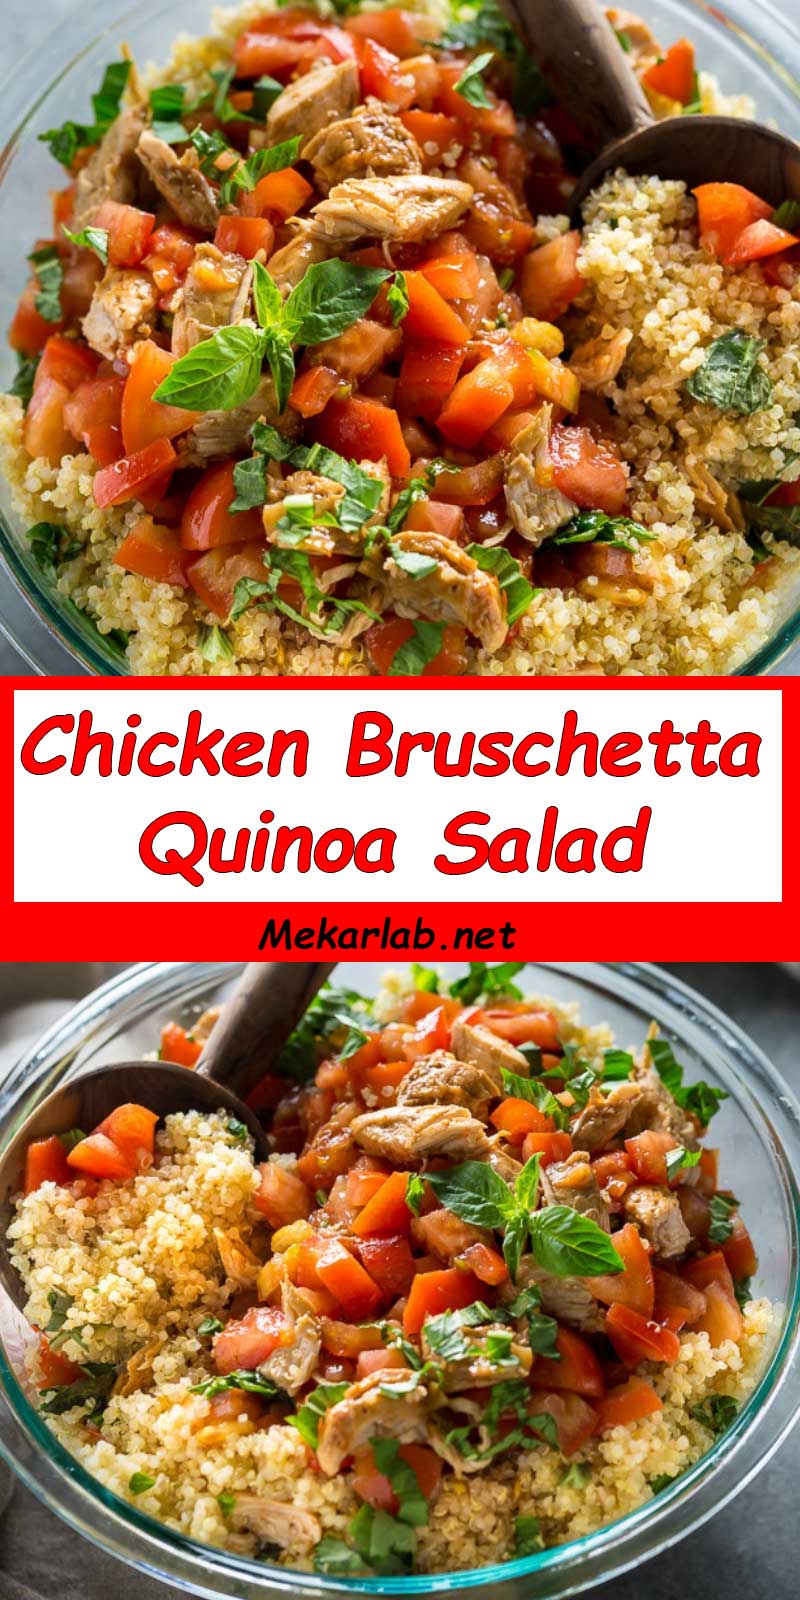 Chicken Bruschetta Quinoa Salad